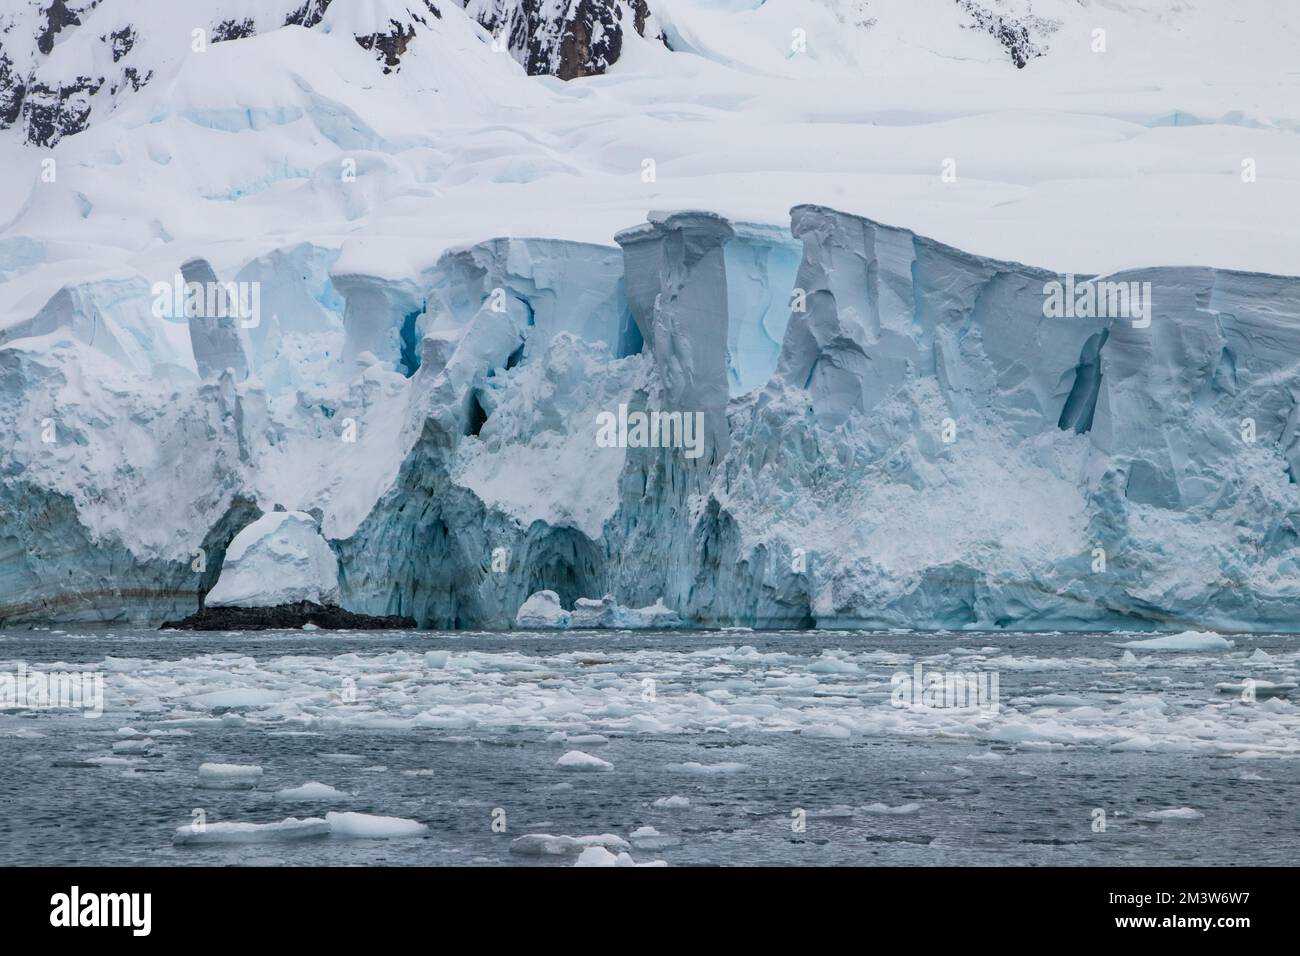 Formazione di ghiaccio blu frastagliato ai margini della penisola antartica. Neve e rocce sullo sfondo; mare calmo, disseminato di pezzi di ghiaccio marino. Foto Stock